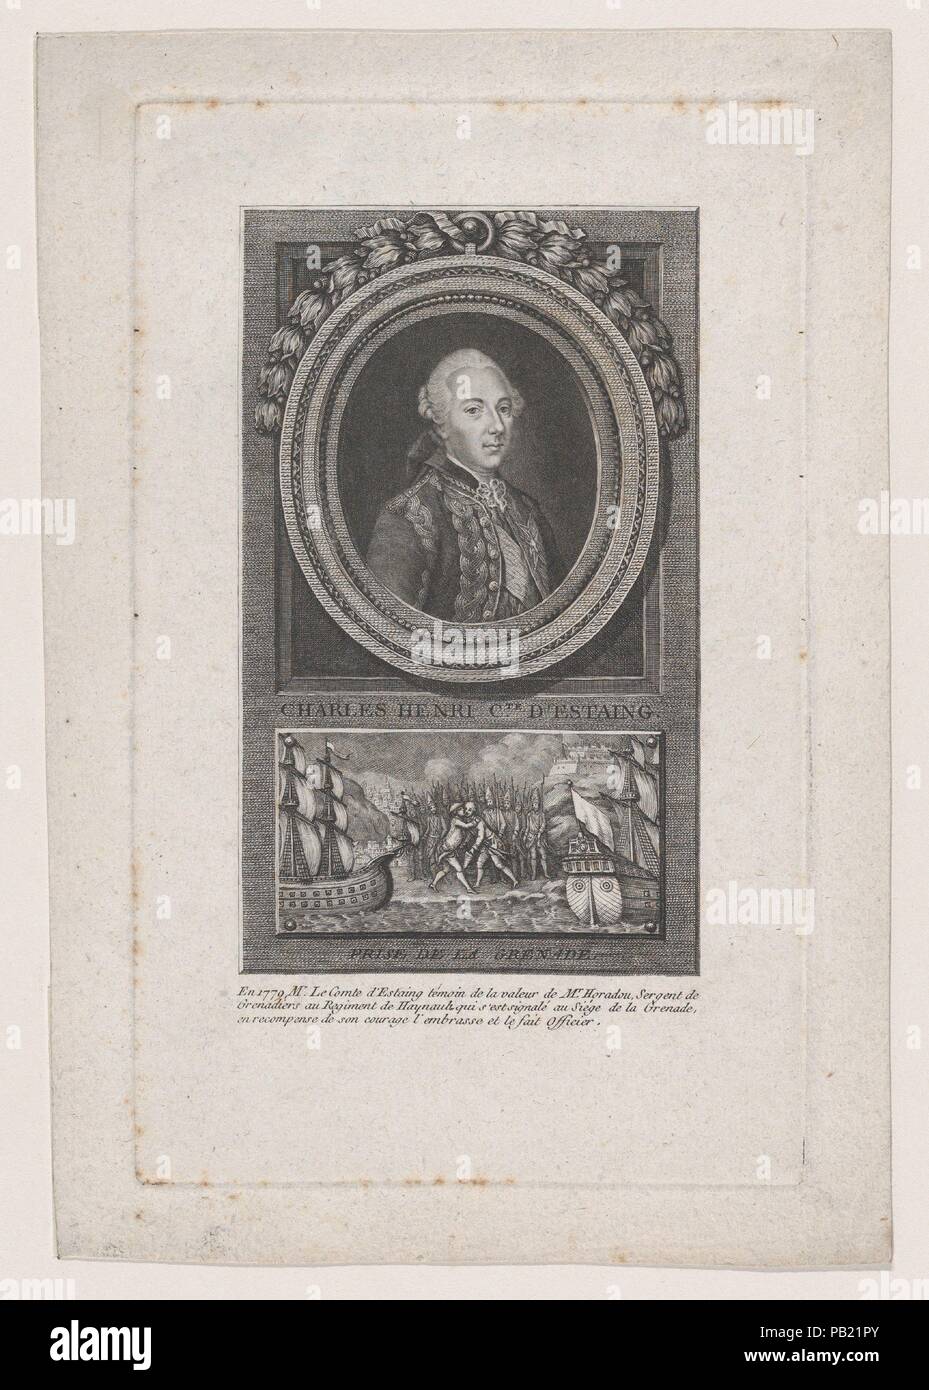 Portrait of Charles Henri, Comte D'Estaing. Artist: Jacques Barbié (French, Paris 1735-1779 Paris). Dimensions: Sheet: 9 9/16 × 6 7/16 in. (24.3 × 16.4 cm)  Plate: 8 3/8 × 5 3/16 in. (21.3 × 13.1 cm). Date: 1779. Museum: Metropolitan Museum of Art, New York, USA. Stock Photo